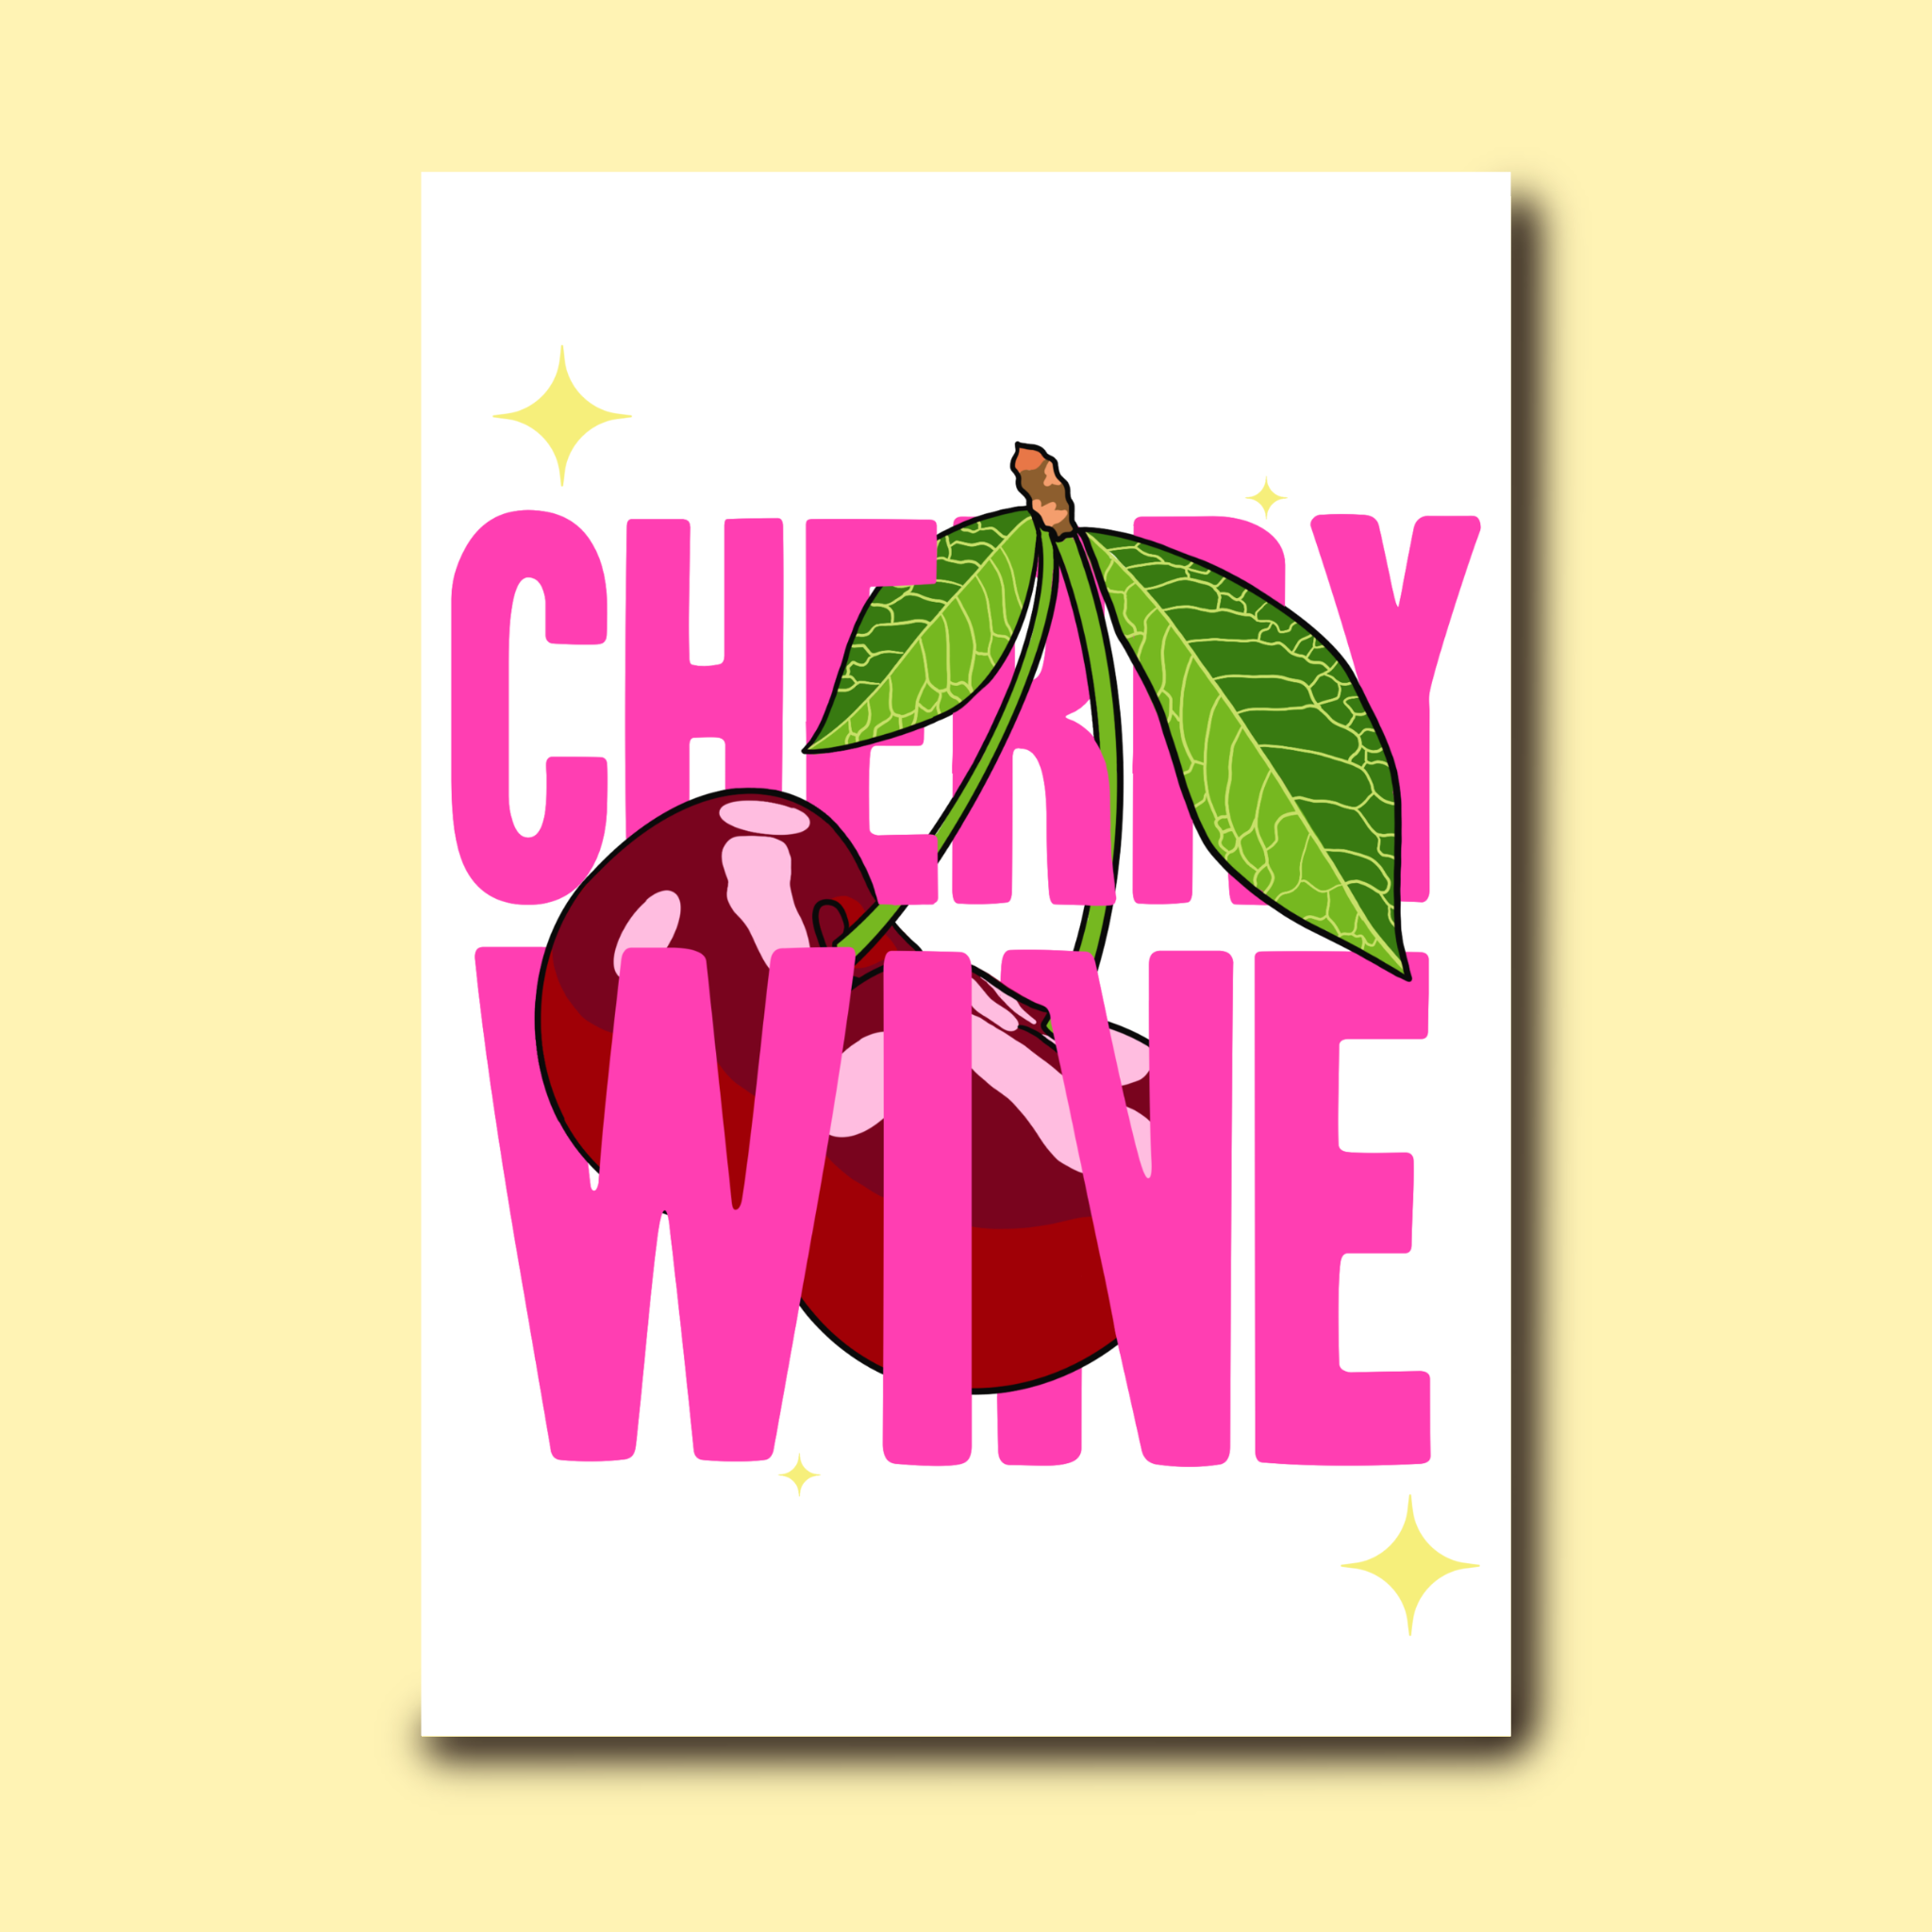 Cherry wine Old stock